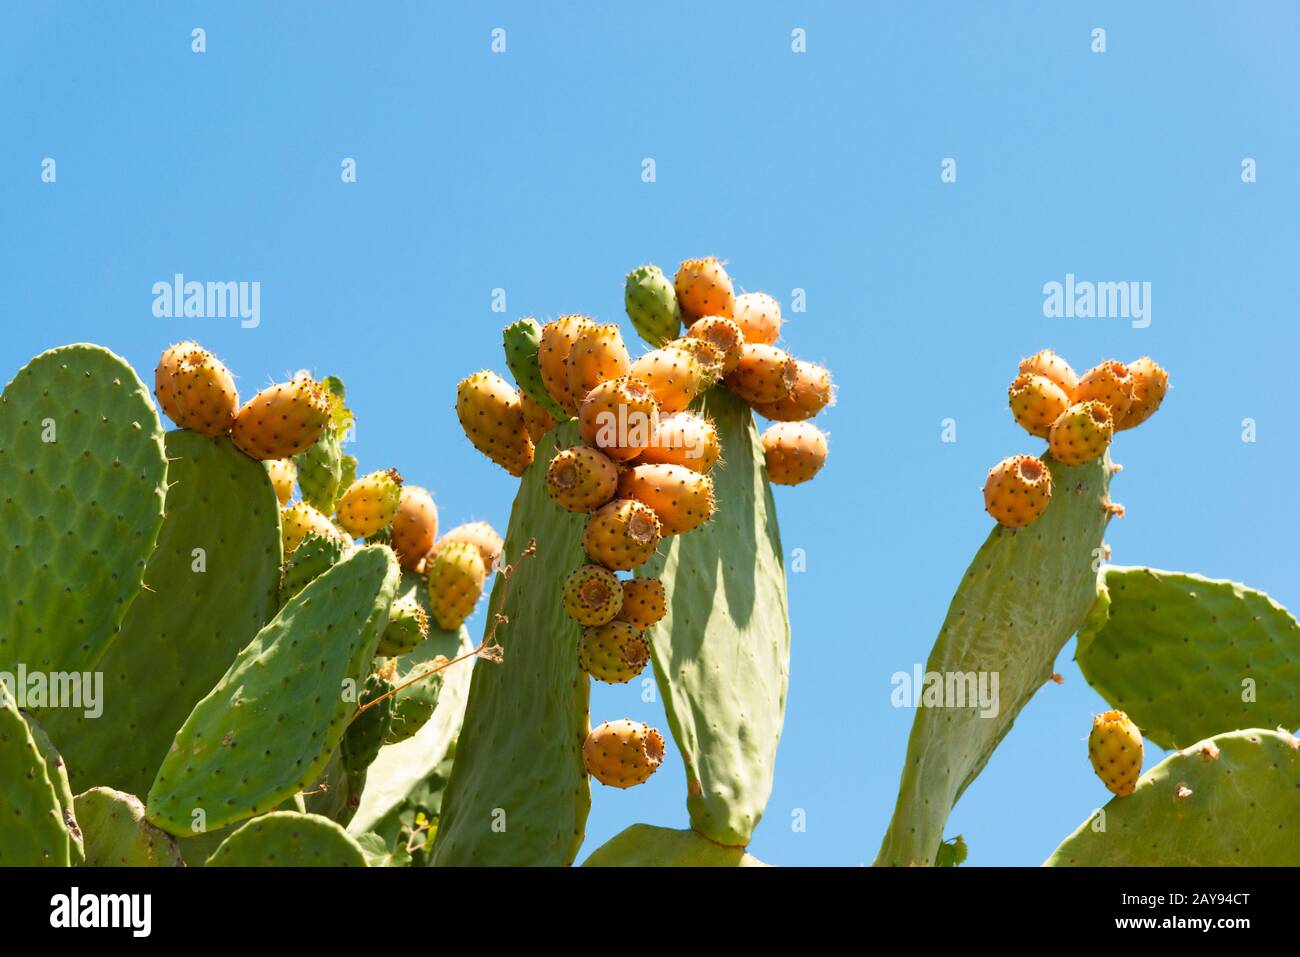 Stachelige Birnpflanze mit gereifter Kakteen-Feigenfrucht. Opuntia oder FICUS-indica Kakteenpflanze mit pharmazeutischen antioxidativen Eigenschaften essbare Früchte. Stockfoto